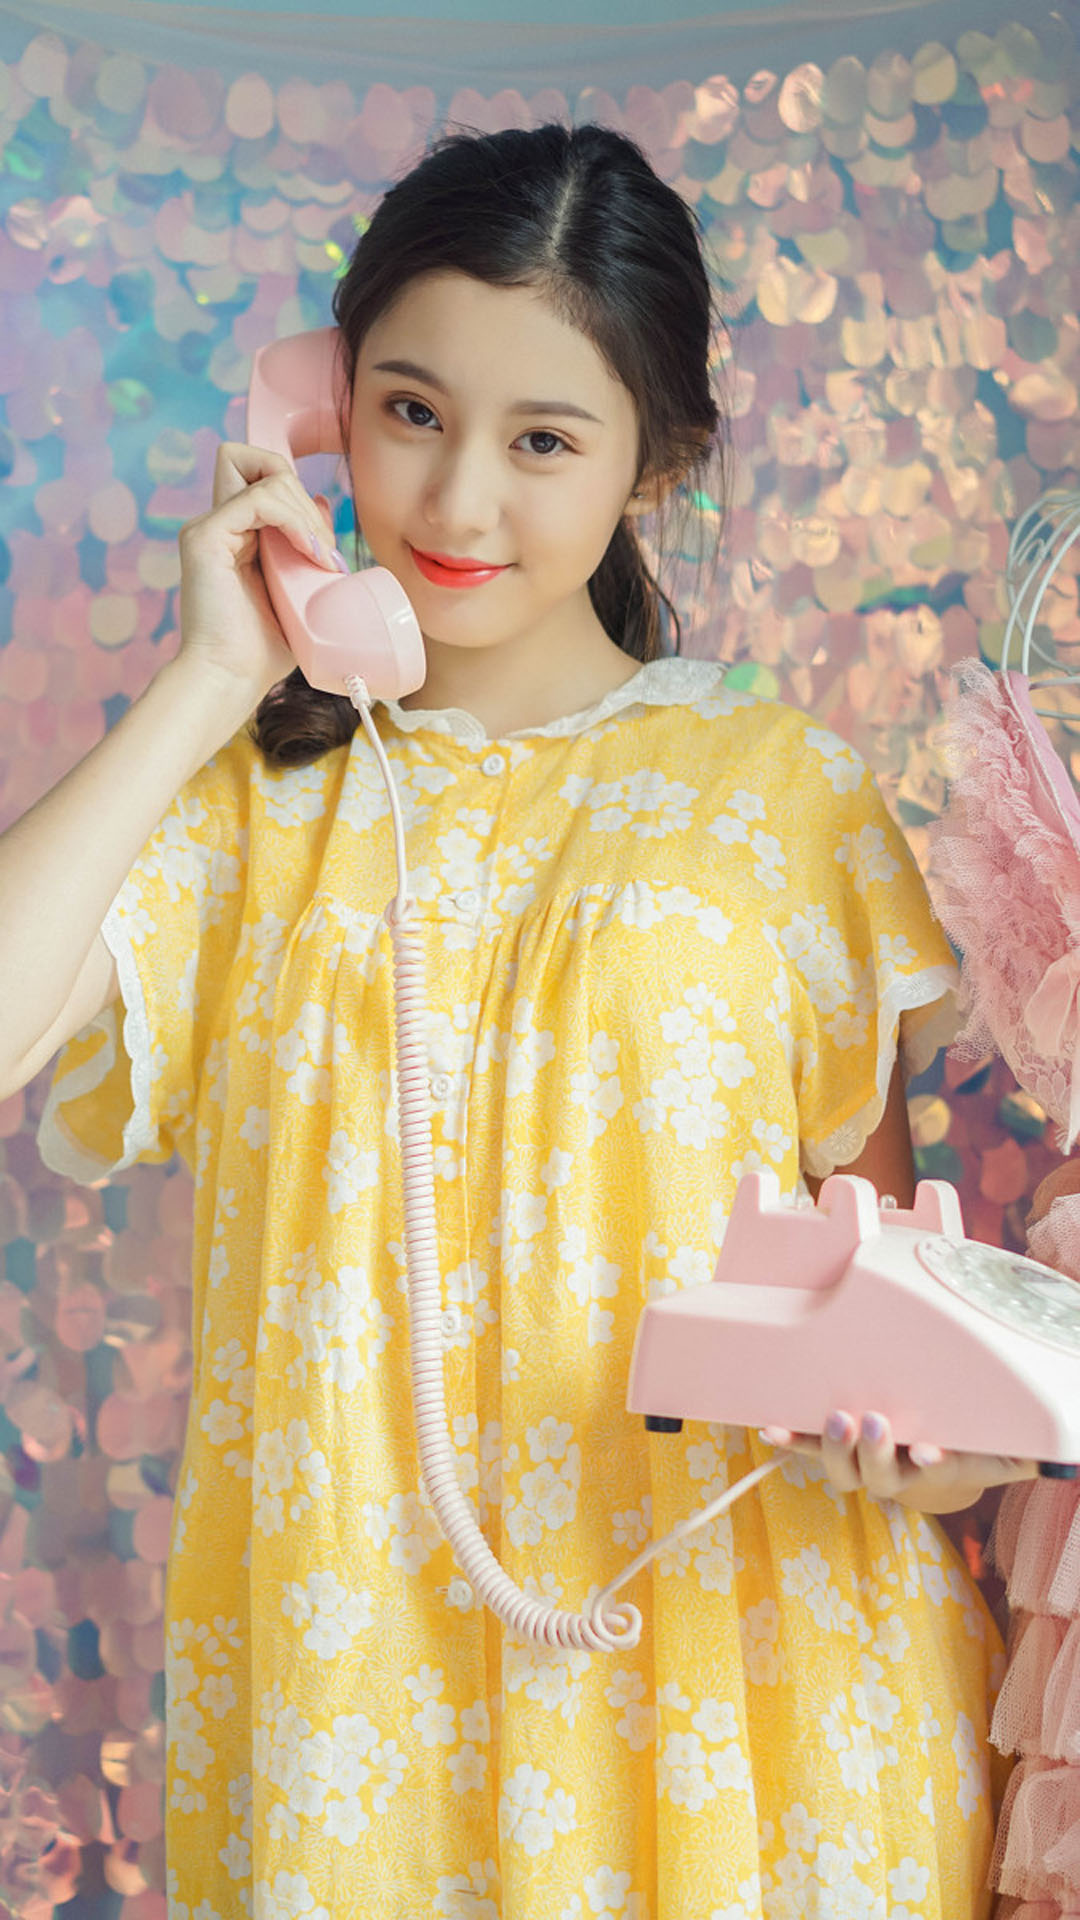 清新黄色连衣裙美少女写真高清手机壁纸